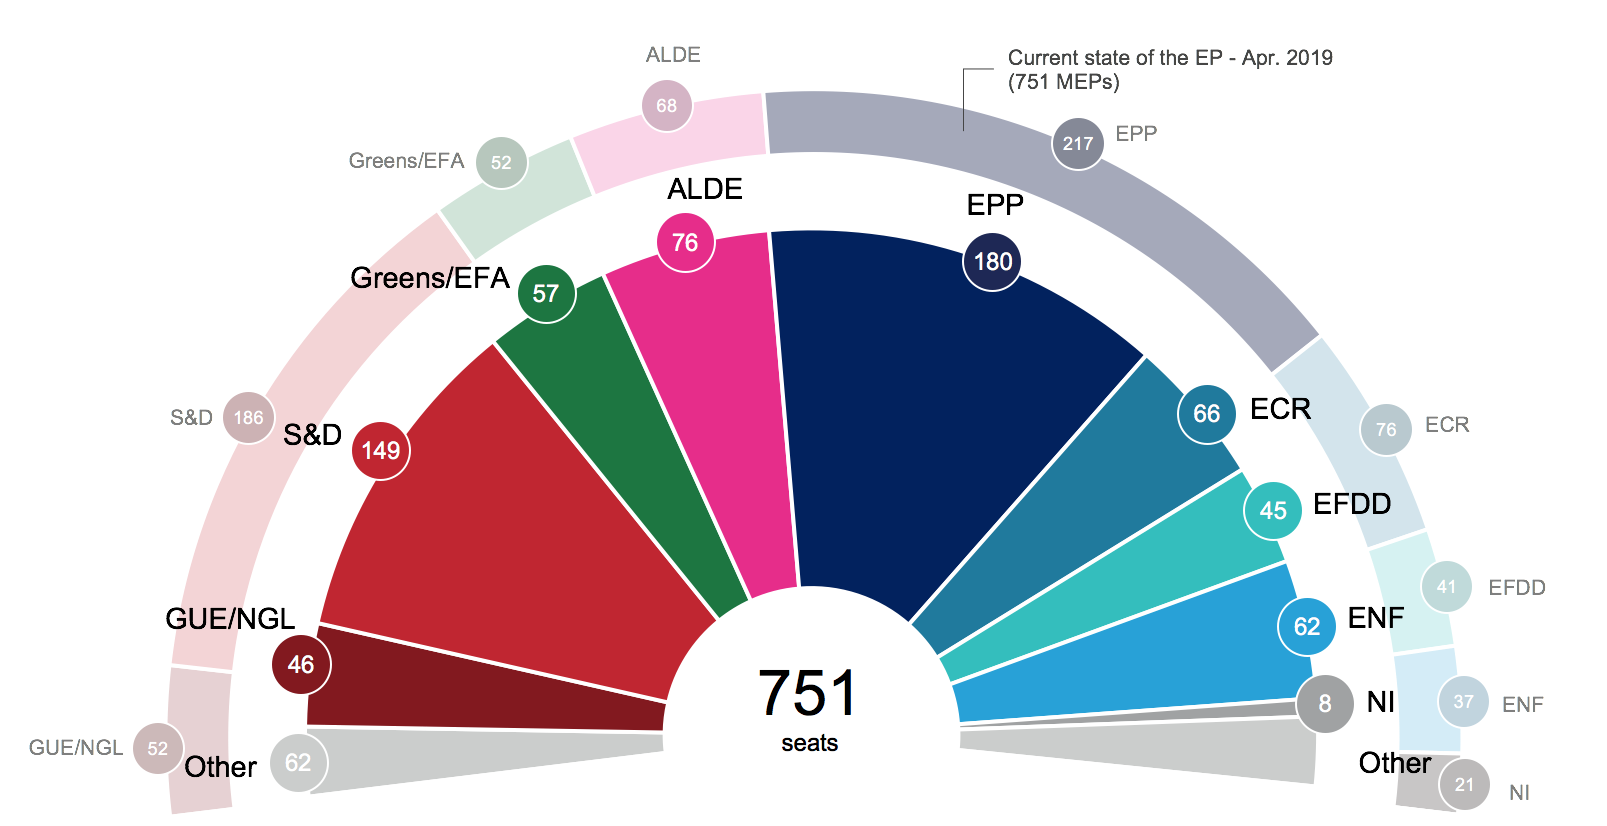 European Parliament political groupings